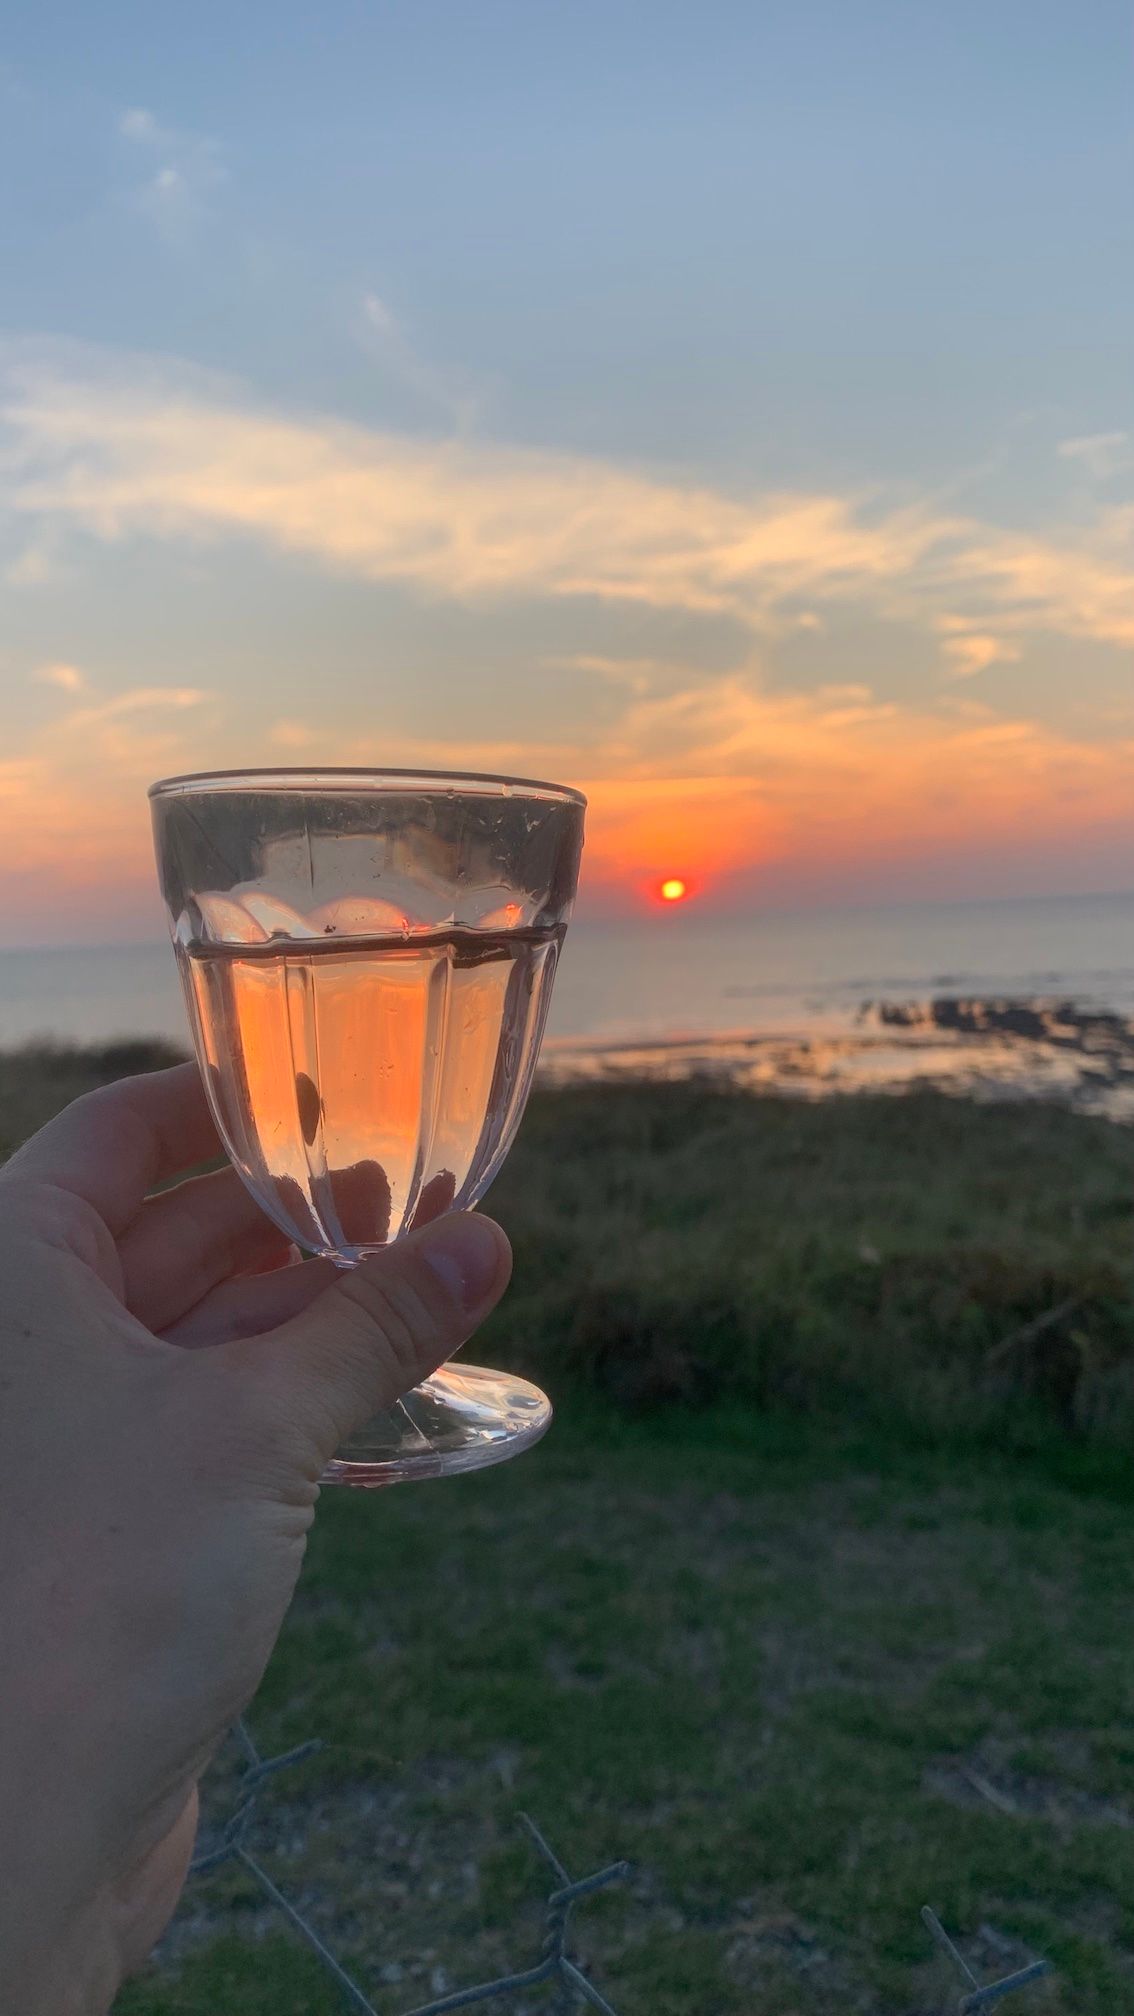 Hand mit Weinglas vorm Sonnenuntergang, Farben spiegeln sich im Wein.